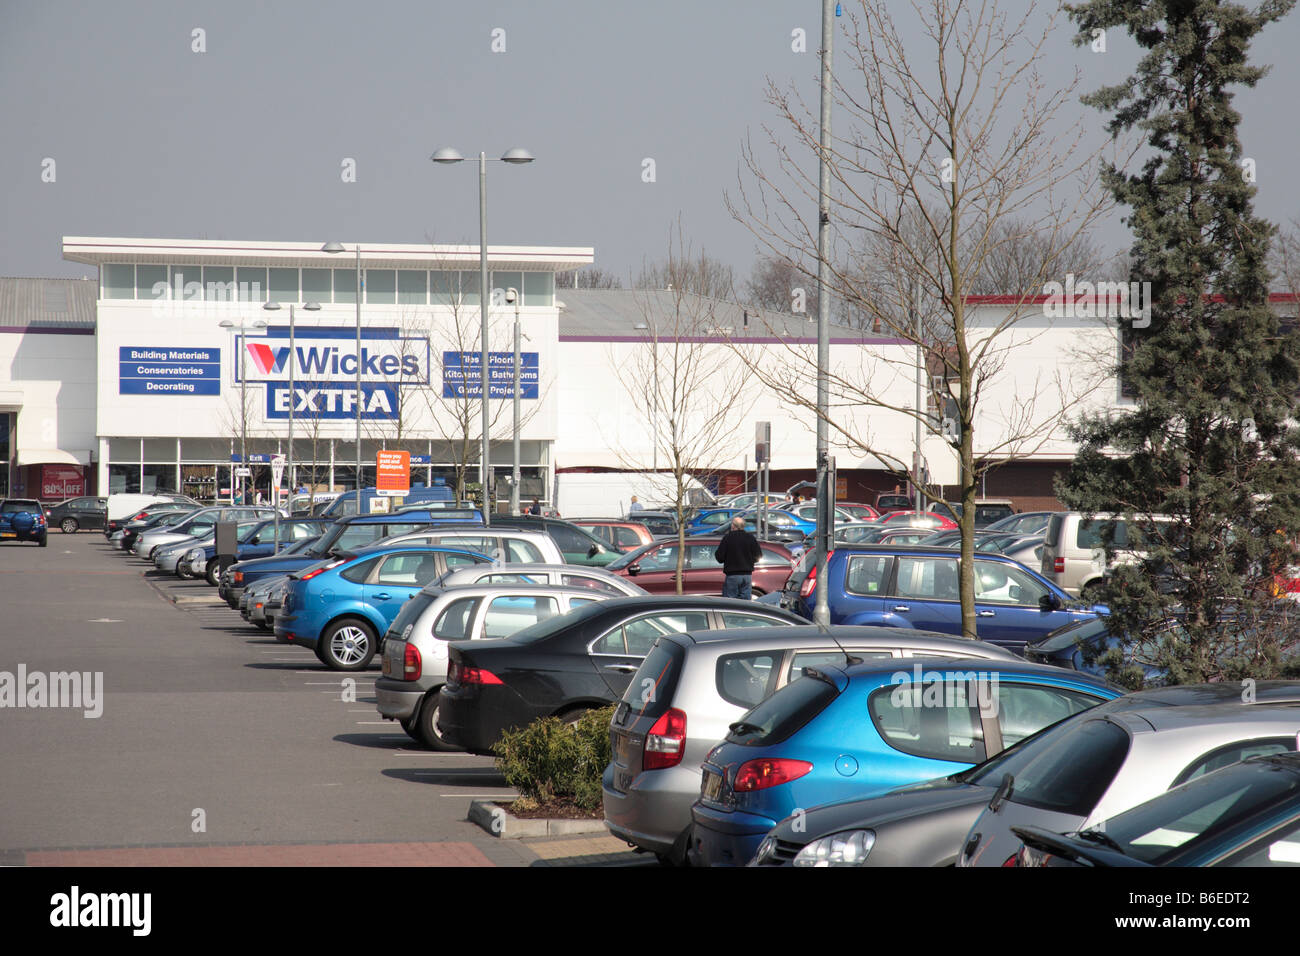 Wickes DIY supplémentaire près de Cambridge entrepôt Retail Park, Aylesbury, exploité par la jonction. Banque D'Images